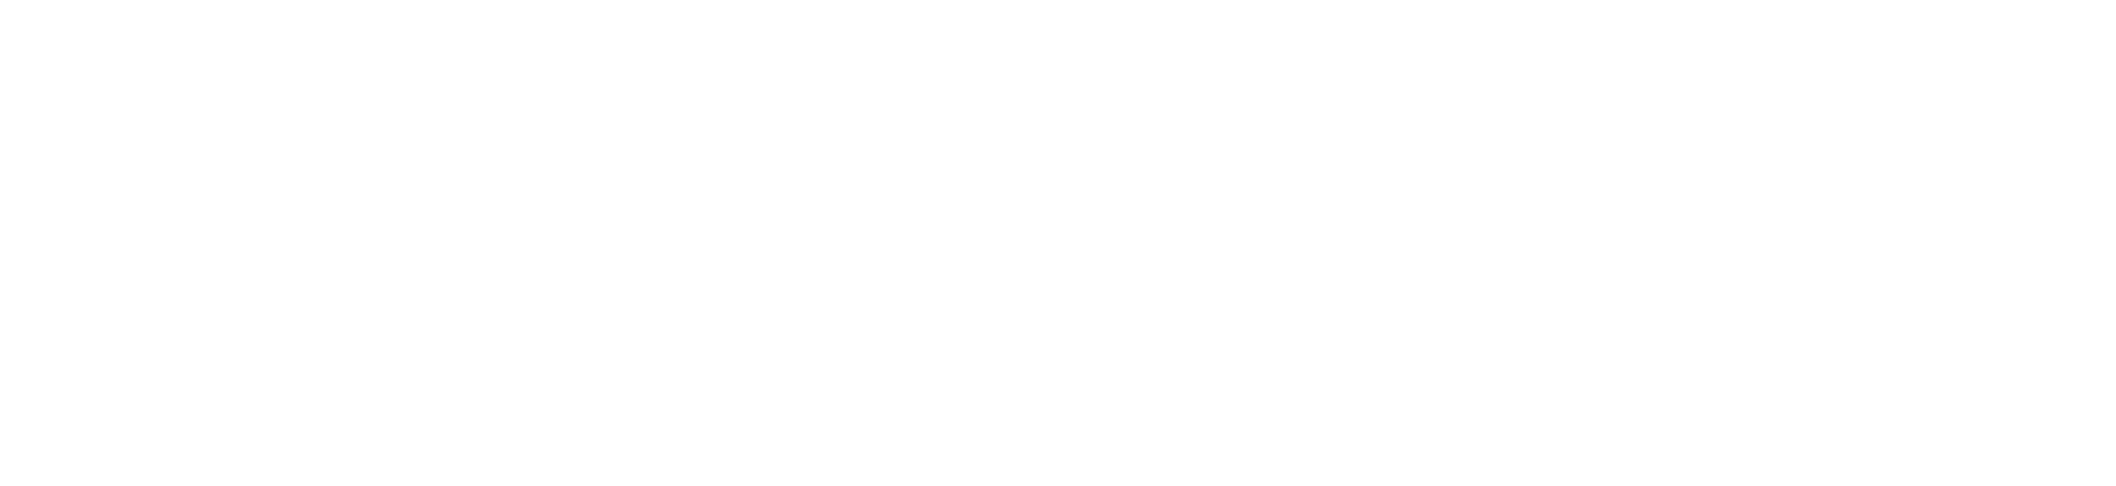 sbsa logo